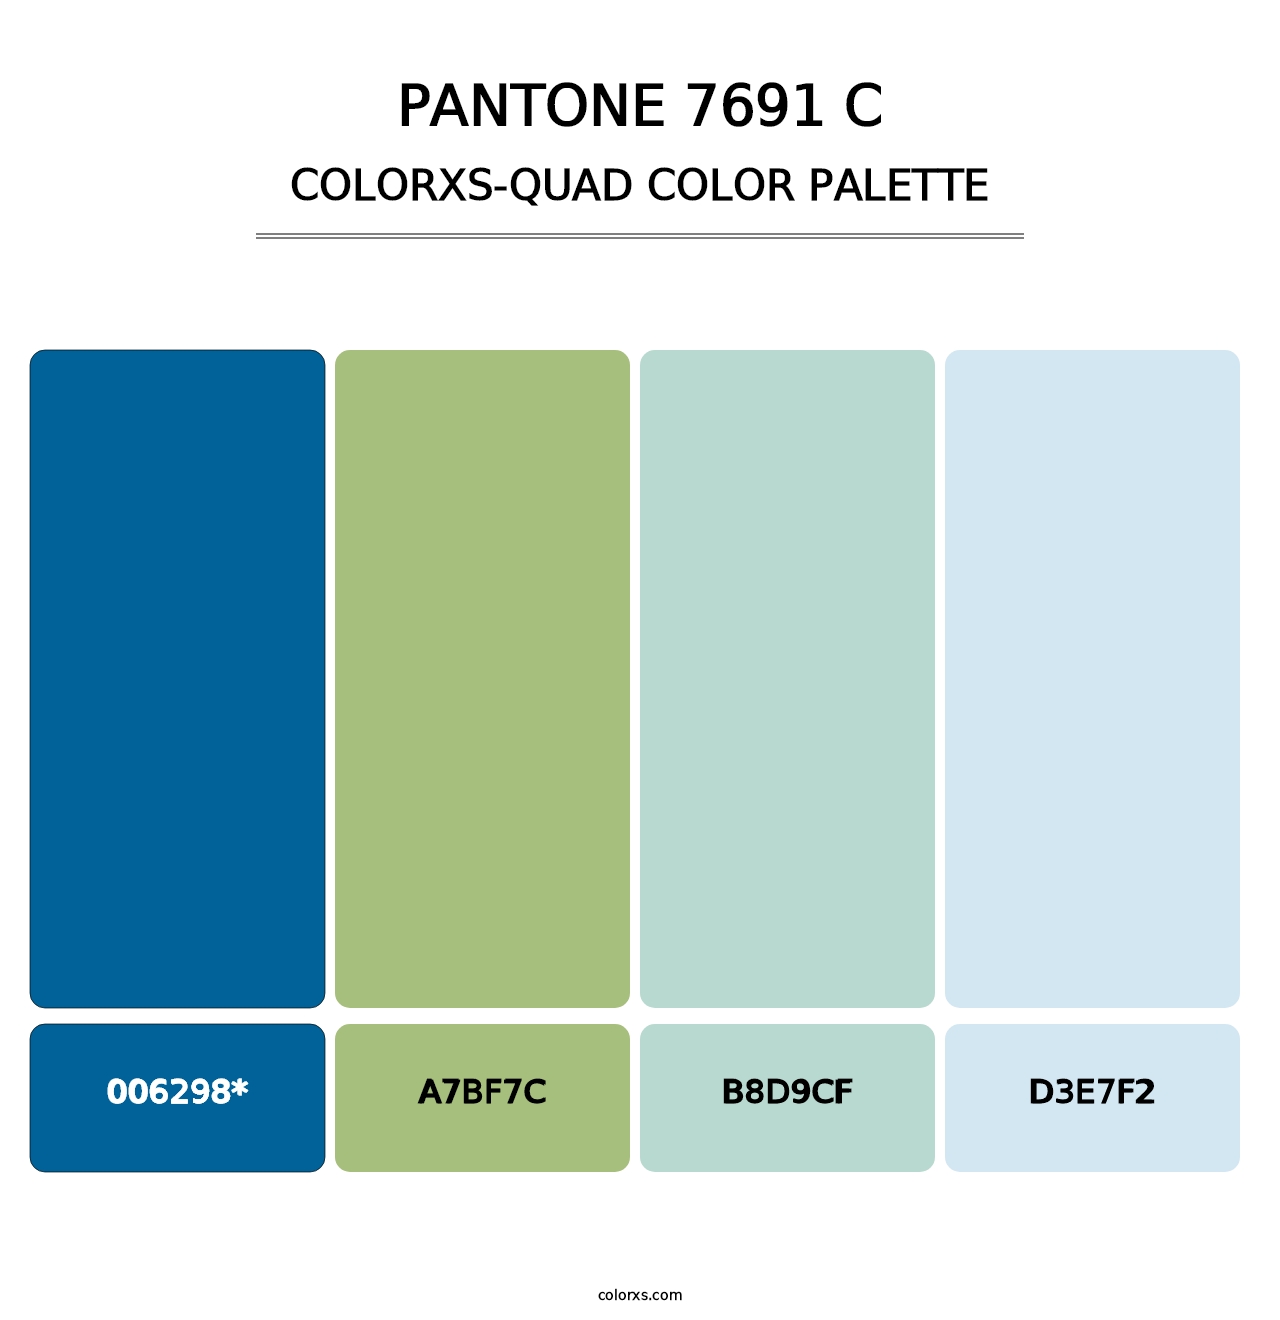 PANTONE 7691 C - Colorxs Quad Palette